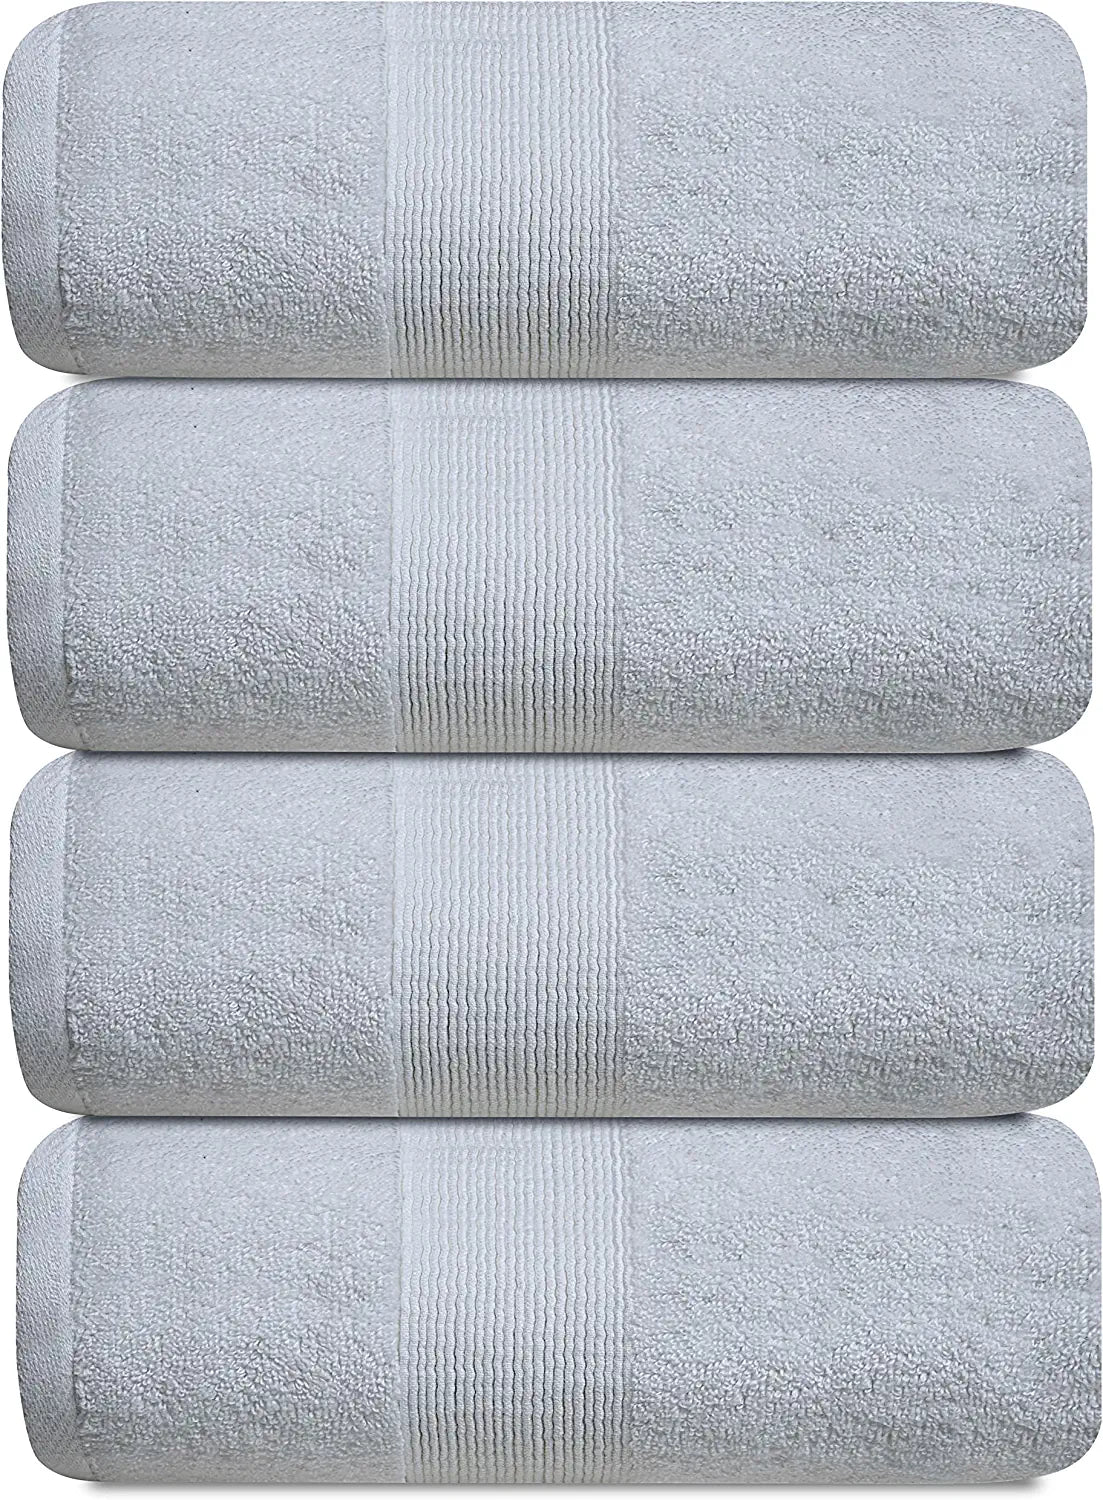 4pn white bath towel